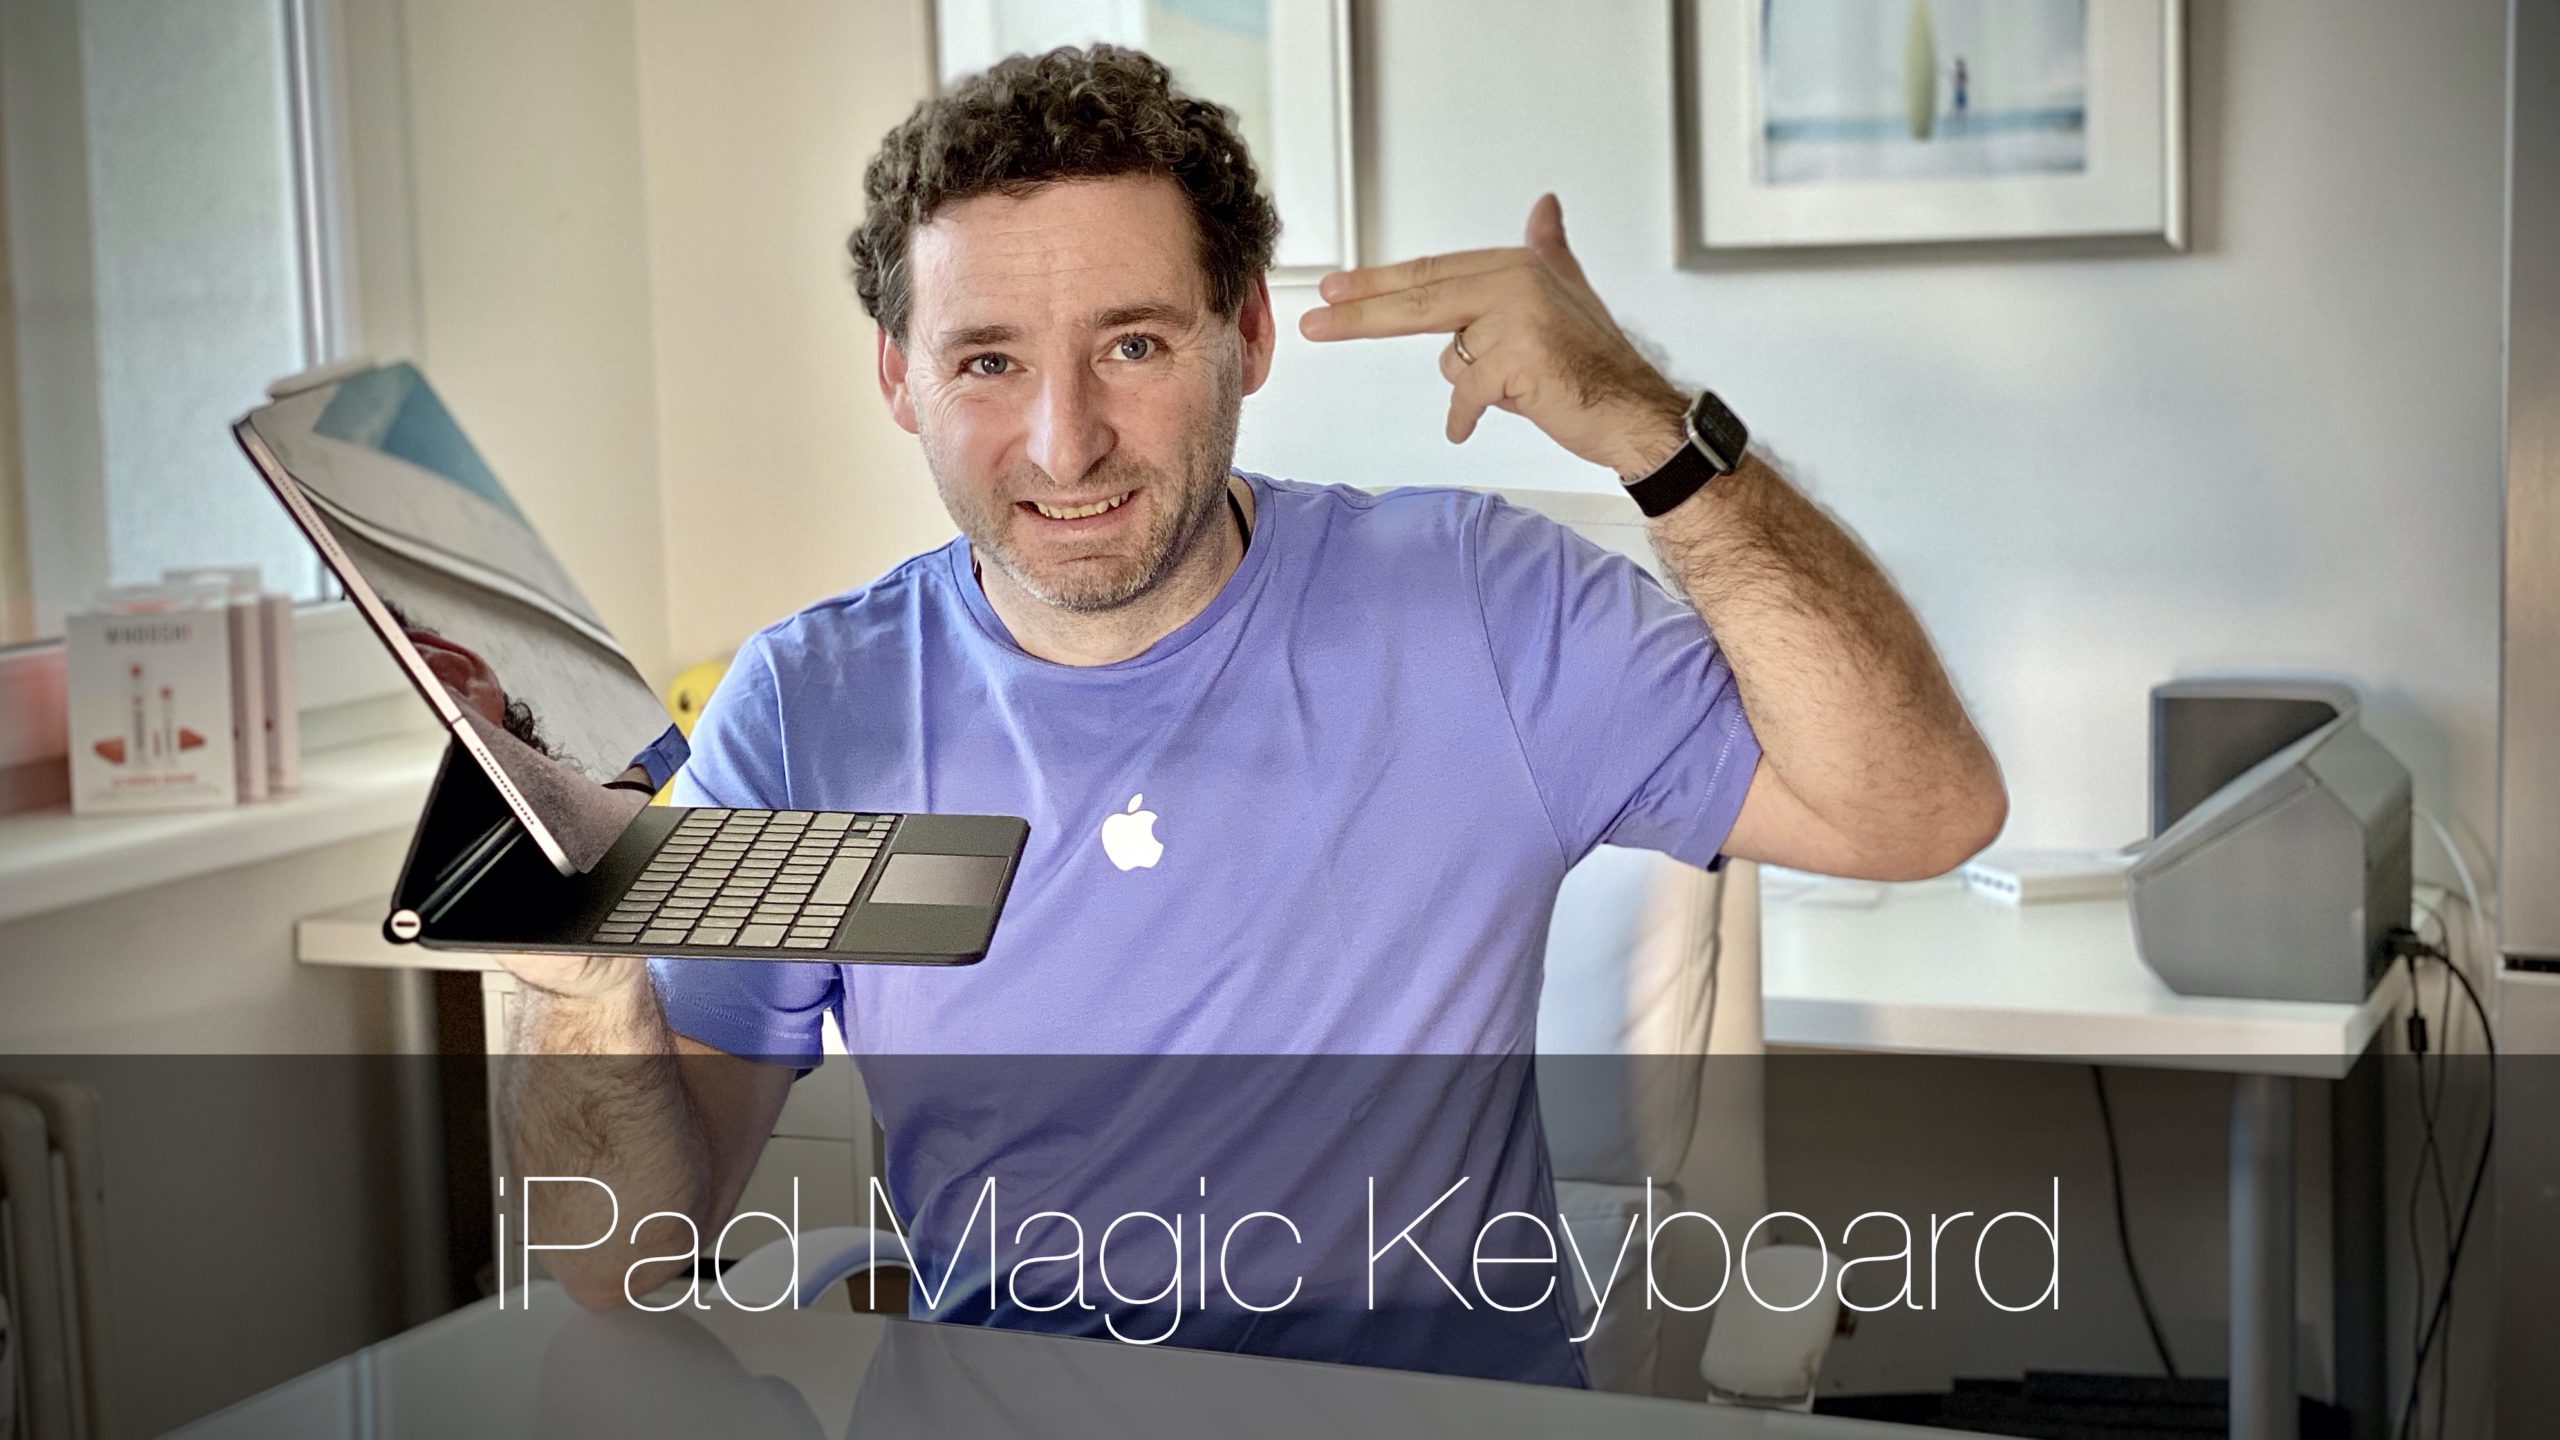 iPad Magic Keyboard